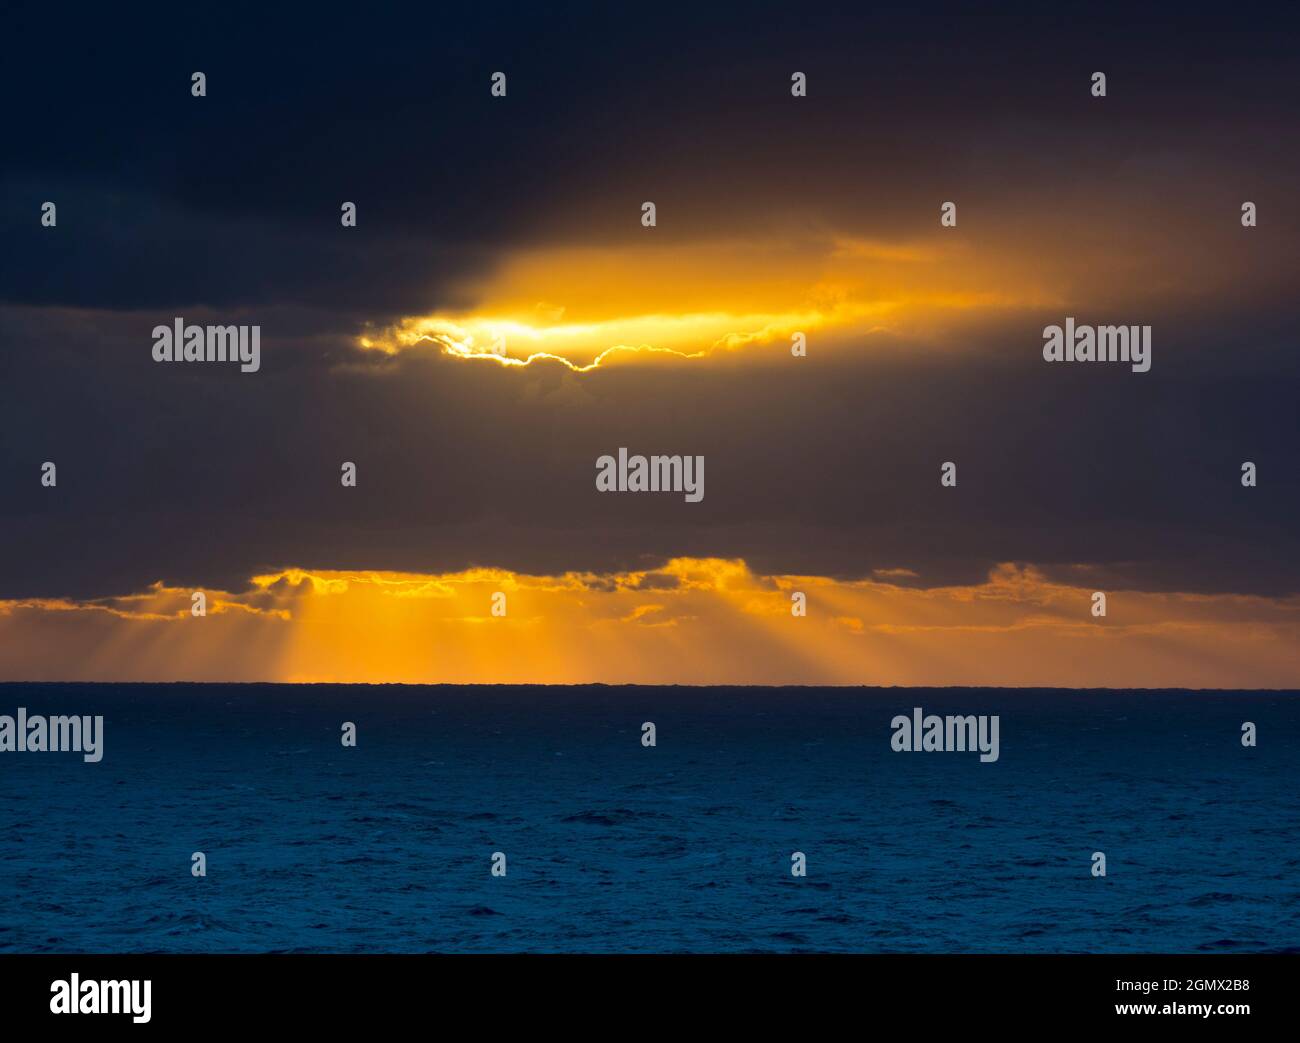 Am Meer vor Australien - 24. Februar 2019 wunderschöner Sonnenuntergang über der Tasmanischen See. Was muss noch gesagt werden? Stockfoto